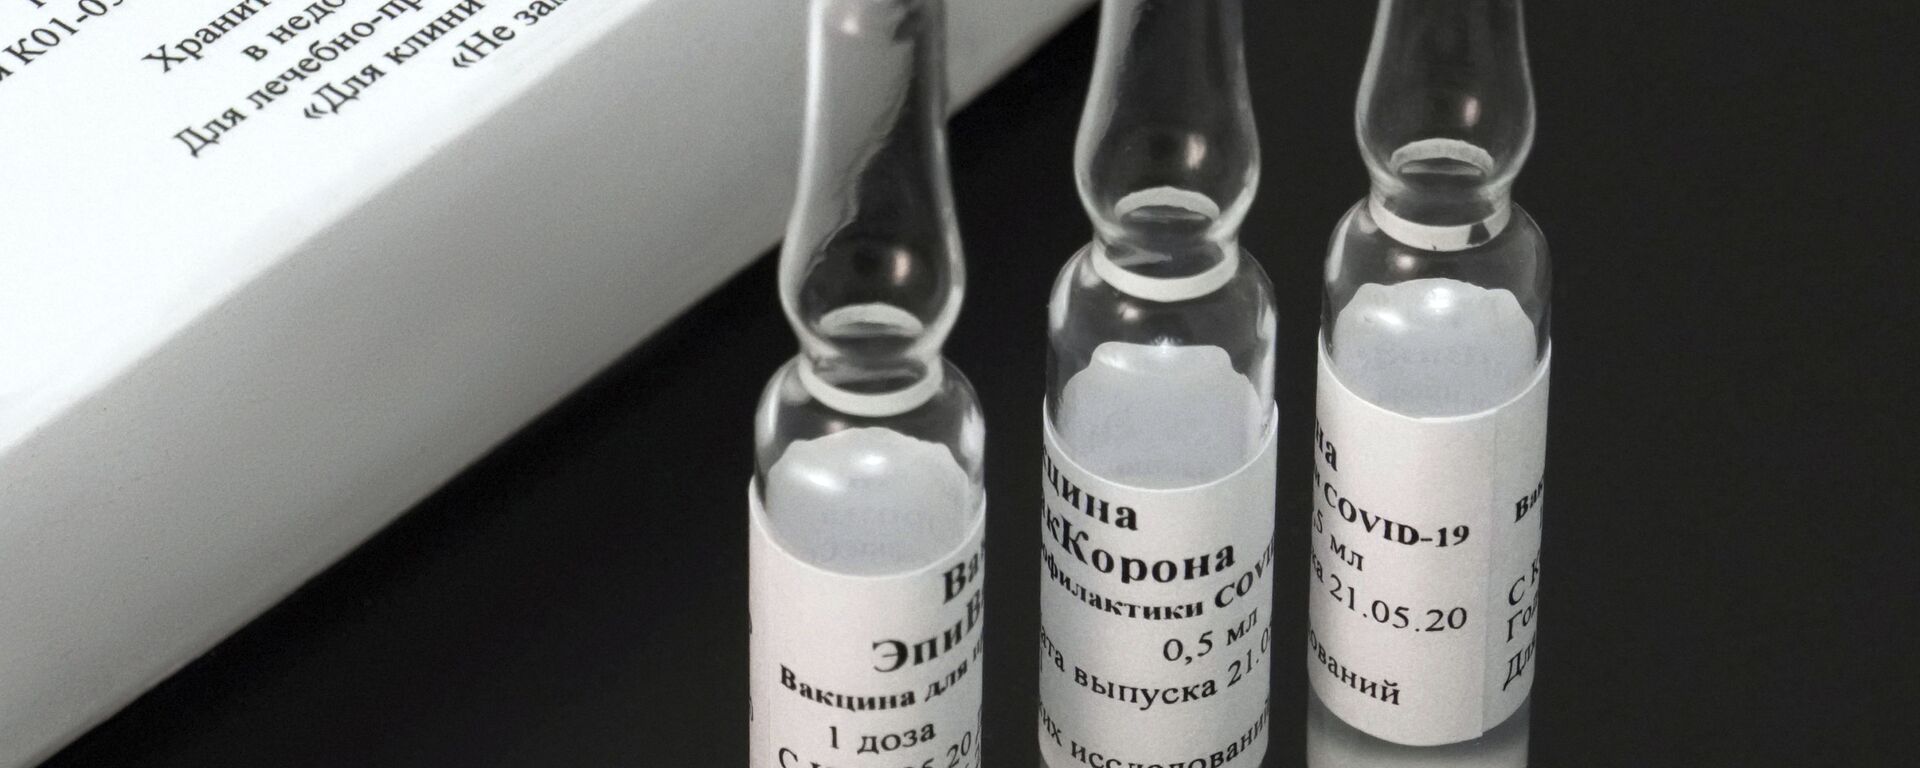 EpiVacCorona, vacuna rusa - Sputnik Mundo, 1920, 15.02.2021